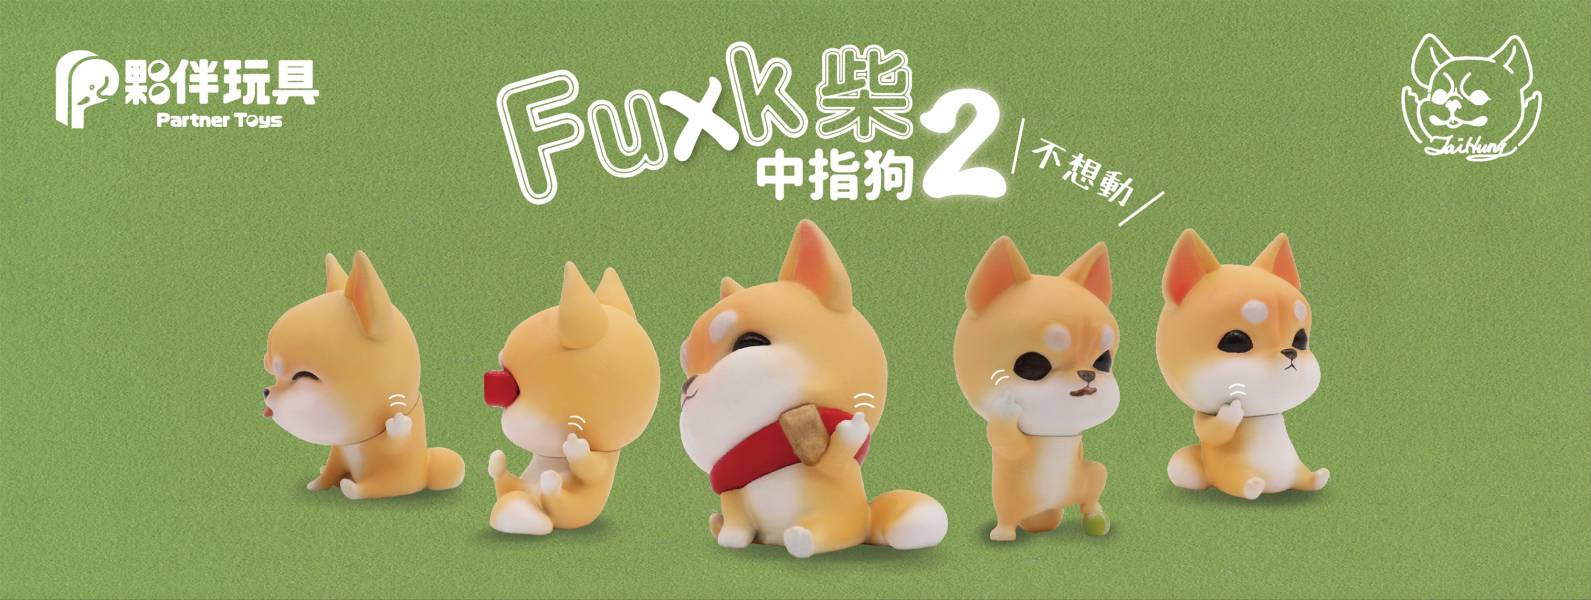 夥伴玩具 扭蛋 中指狗2 Fuxk柴 全5種販售 夥伴玩具,扭蛋,中指狗2,Fuxk柴,全5種販售,FUCK,